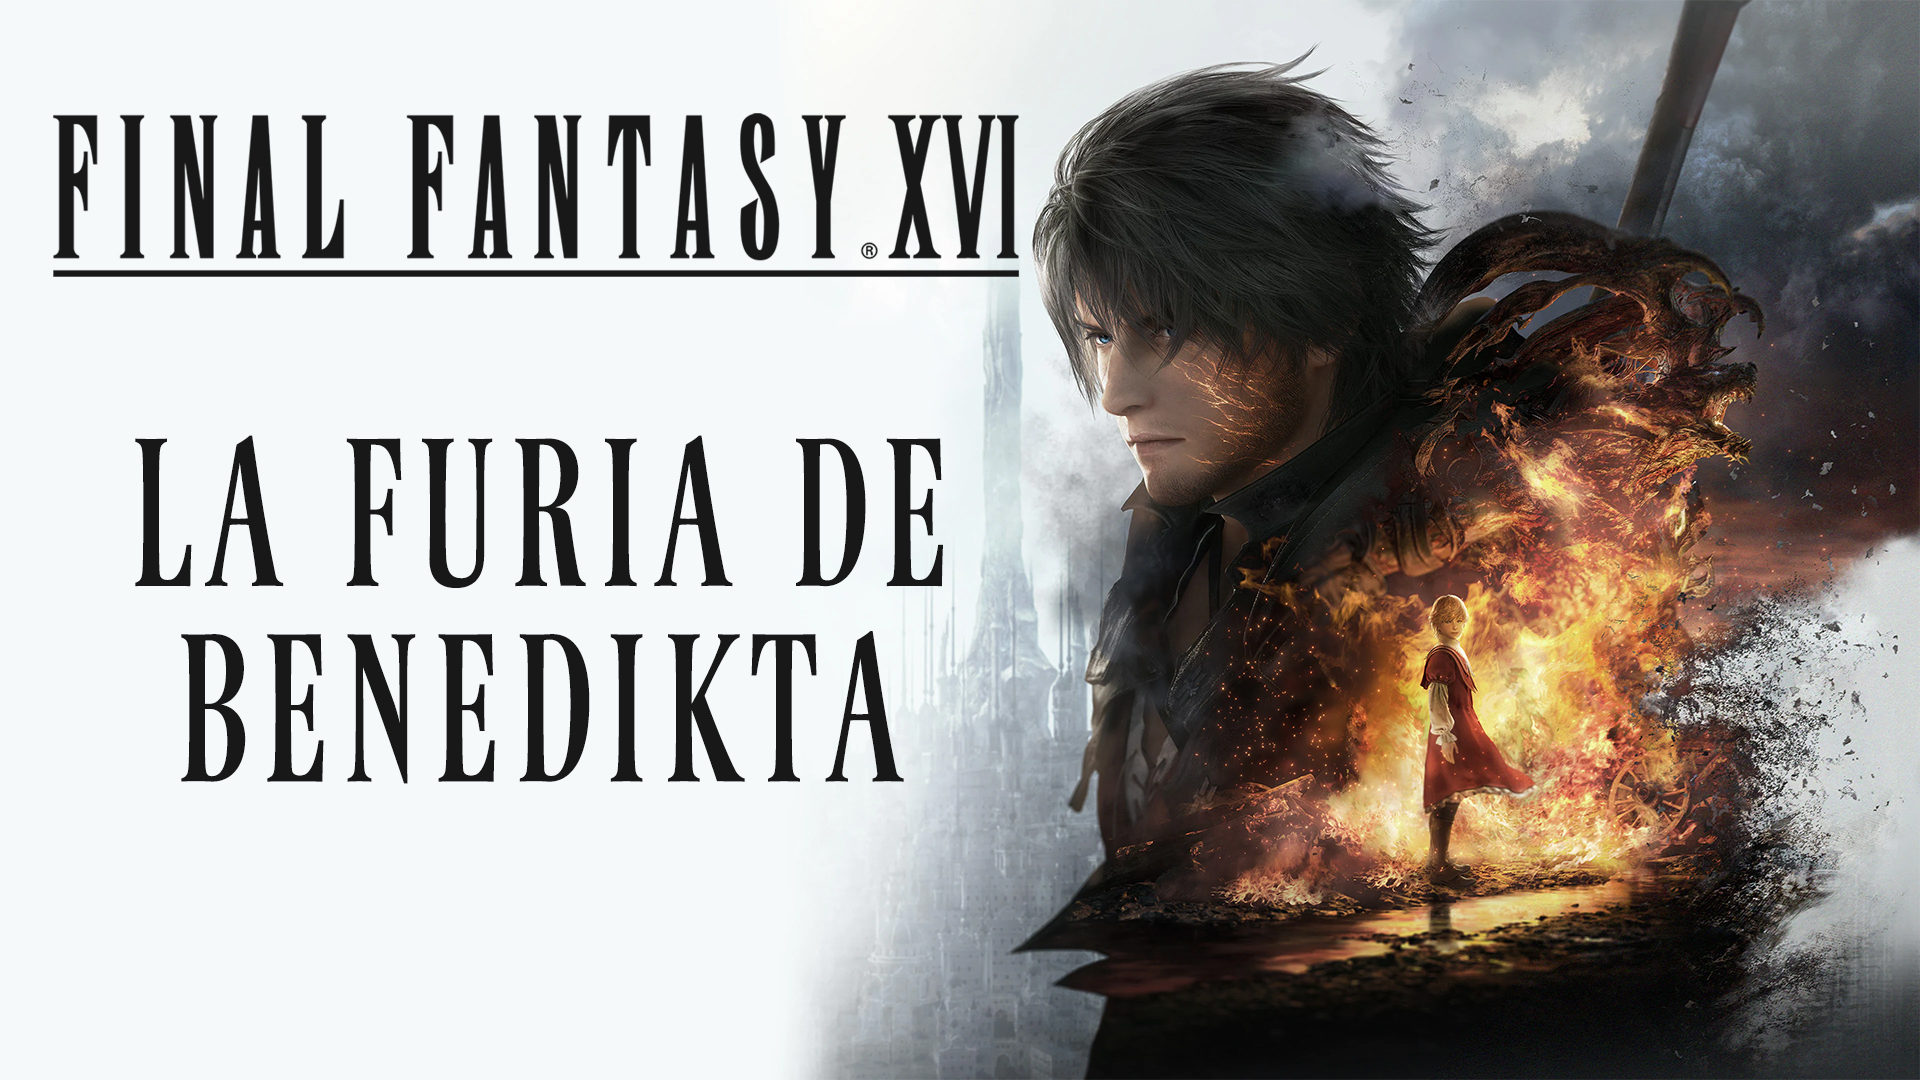 Stream Final Fantasy XVI – La Furia de Benedikta